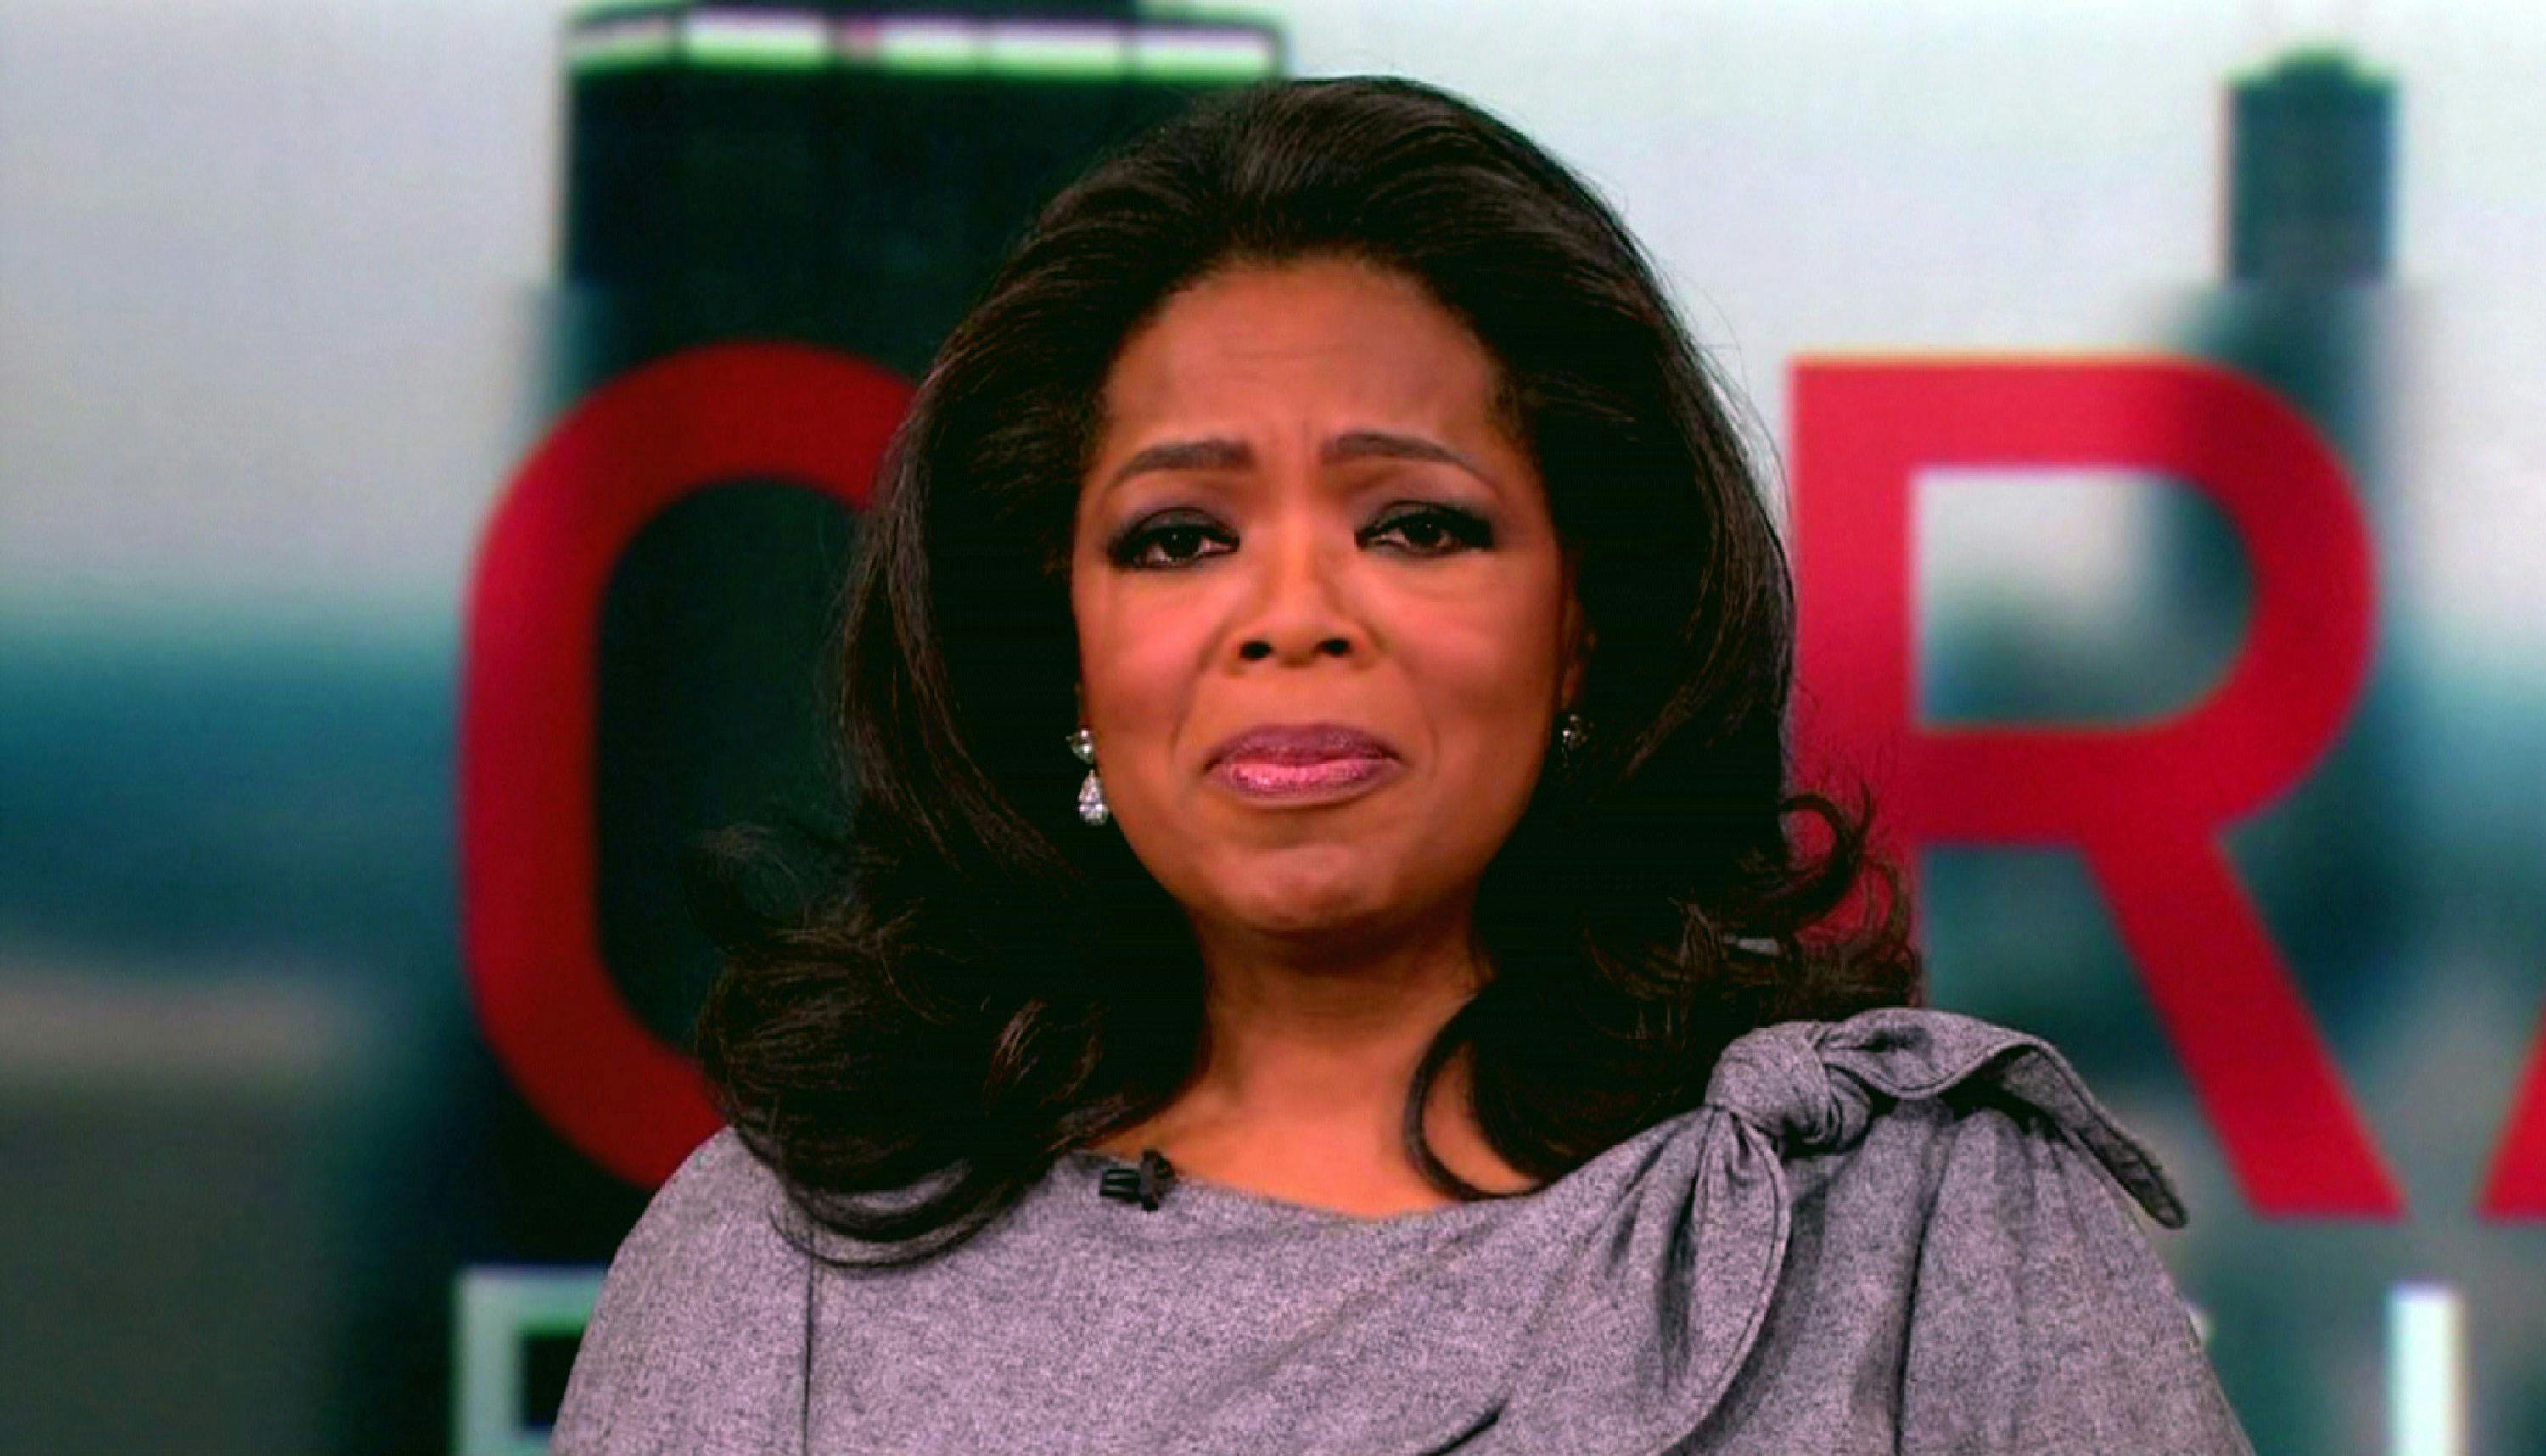 Oprahs sidste udsendelse løber over skærmen den 25. maj i USA